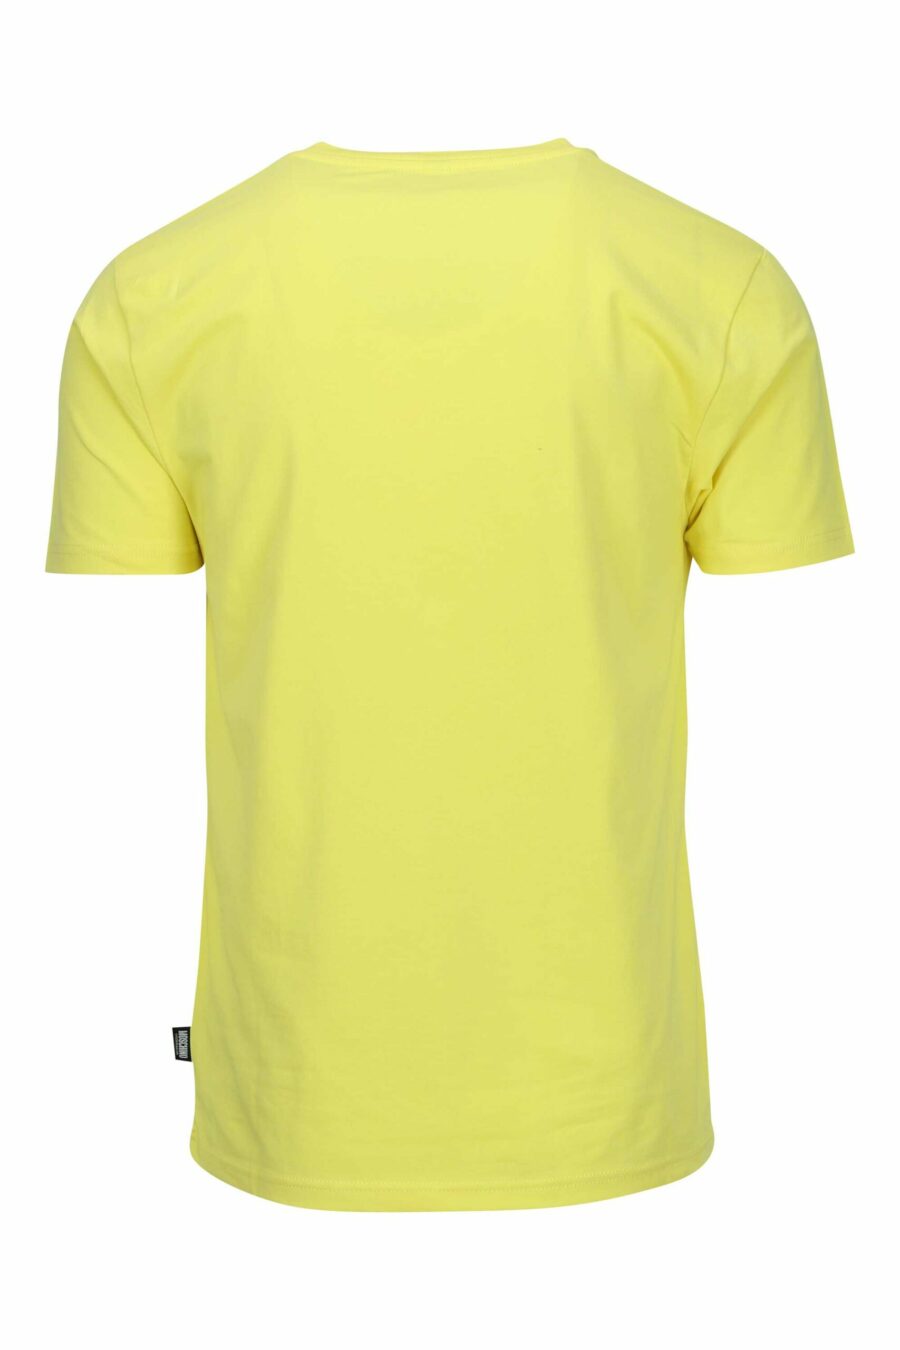 T-shirt jaune avec logo mini patch ours "underbear" - 667113605913 1 à l'échelle